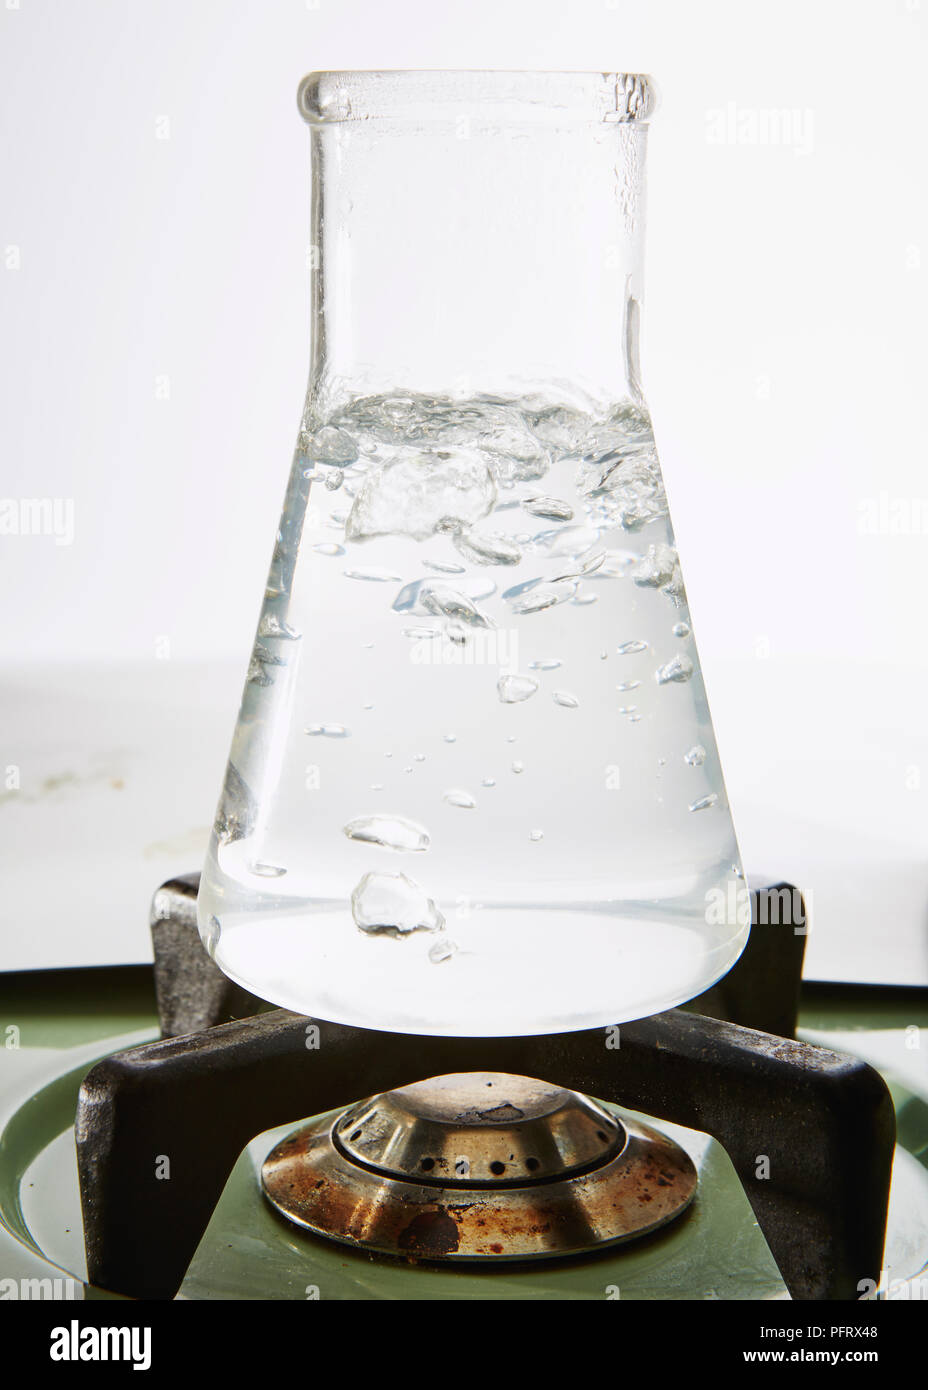 Matraz Erlenmeyer de vidrio que contiene agua hervida Foto de stock